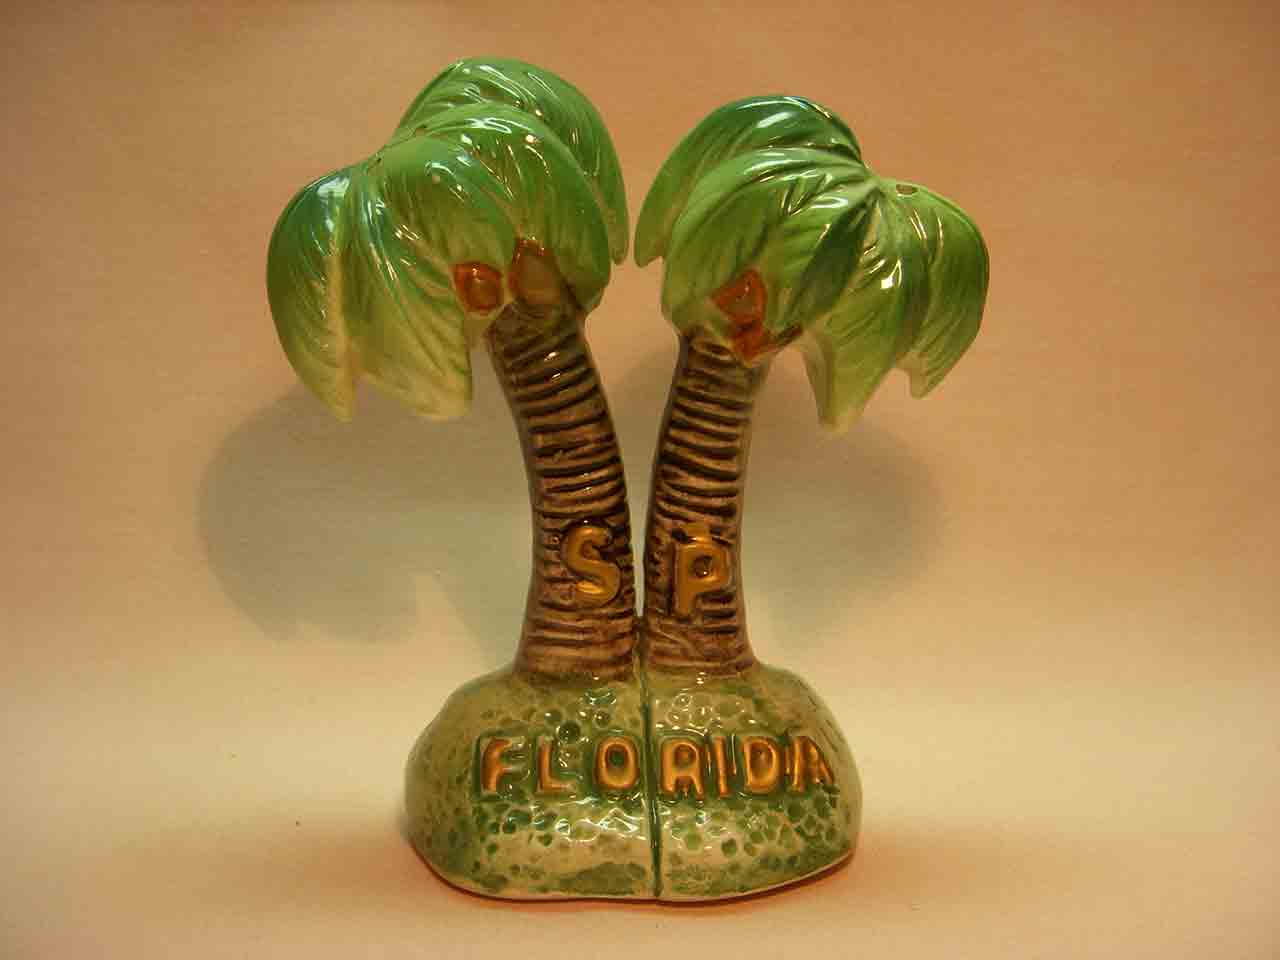 Florida souvenir one piece palm tree salt and pepper shaker